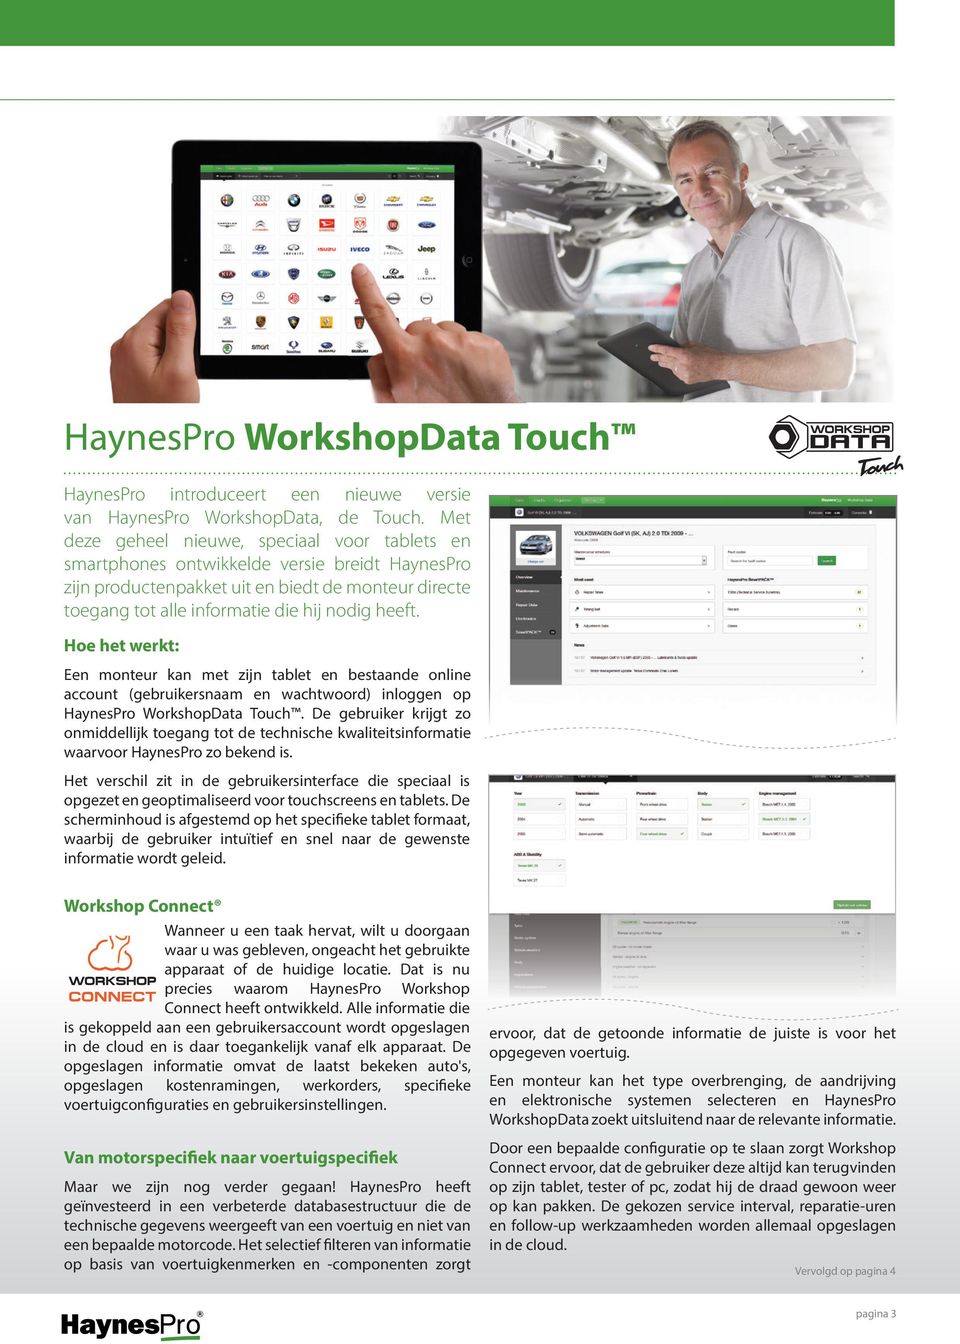 Hoe het werkt: Een monteur kan met zijn tablet en bestaande online account (gebruikersnaam en wachtwoord) inloggen op HaynesPro WorkshopData Touch.